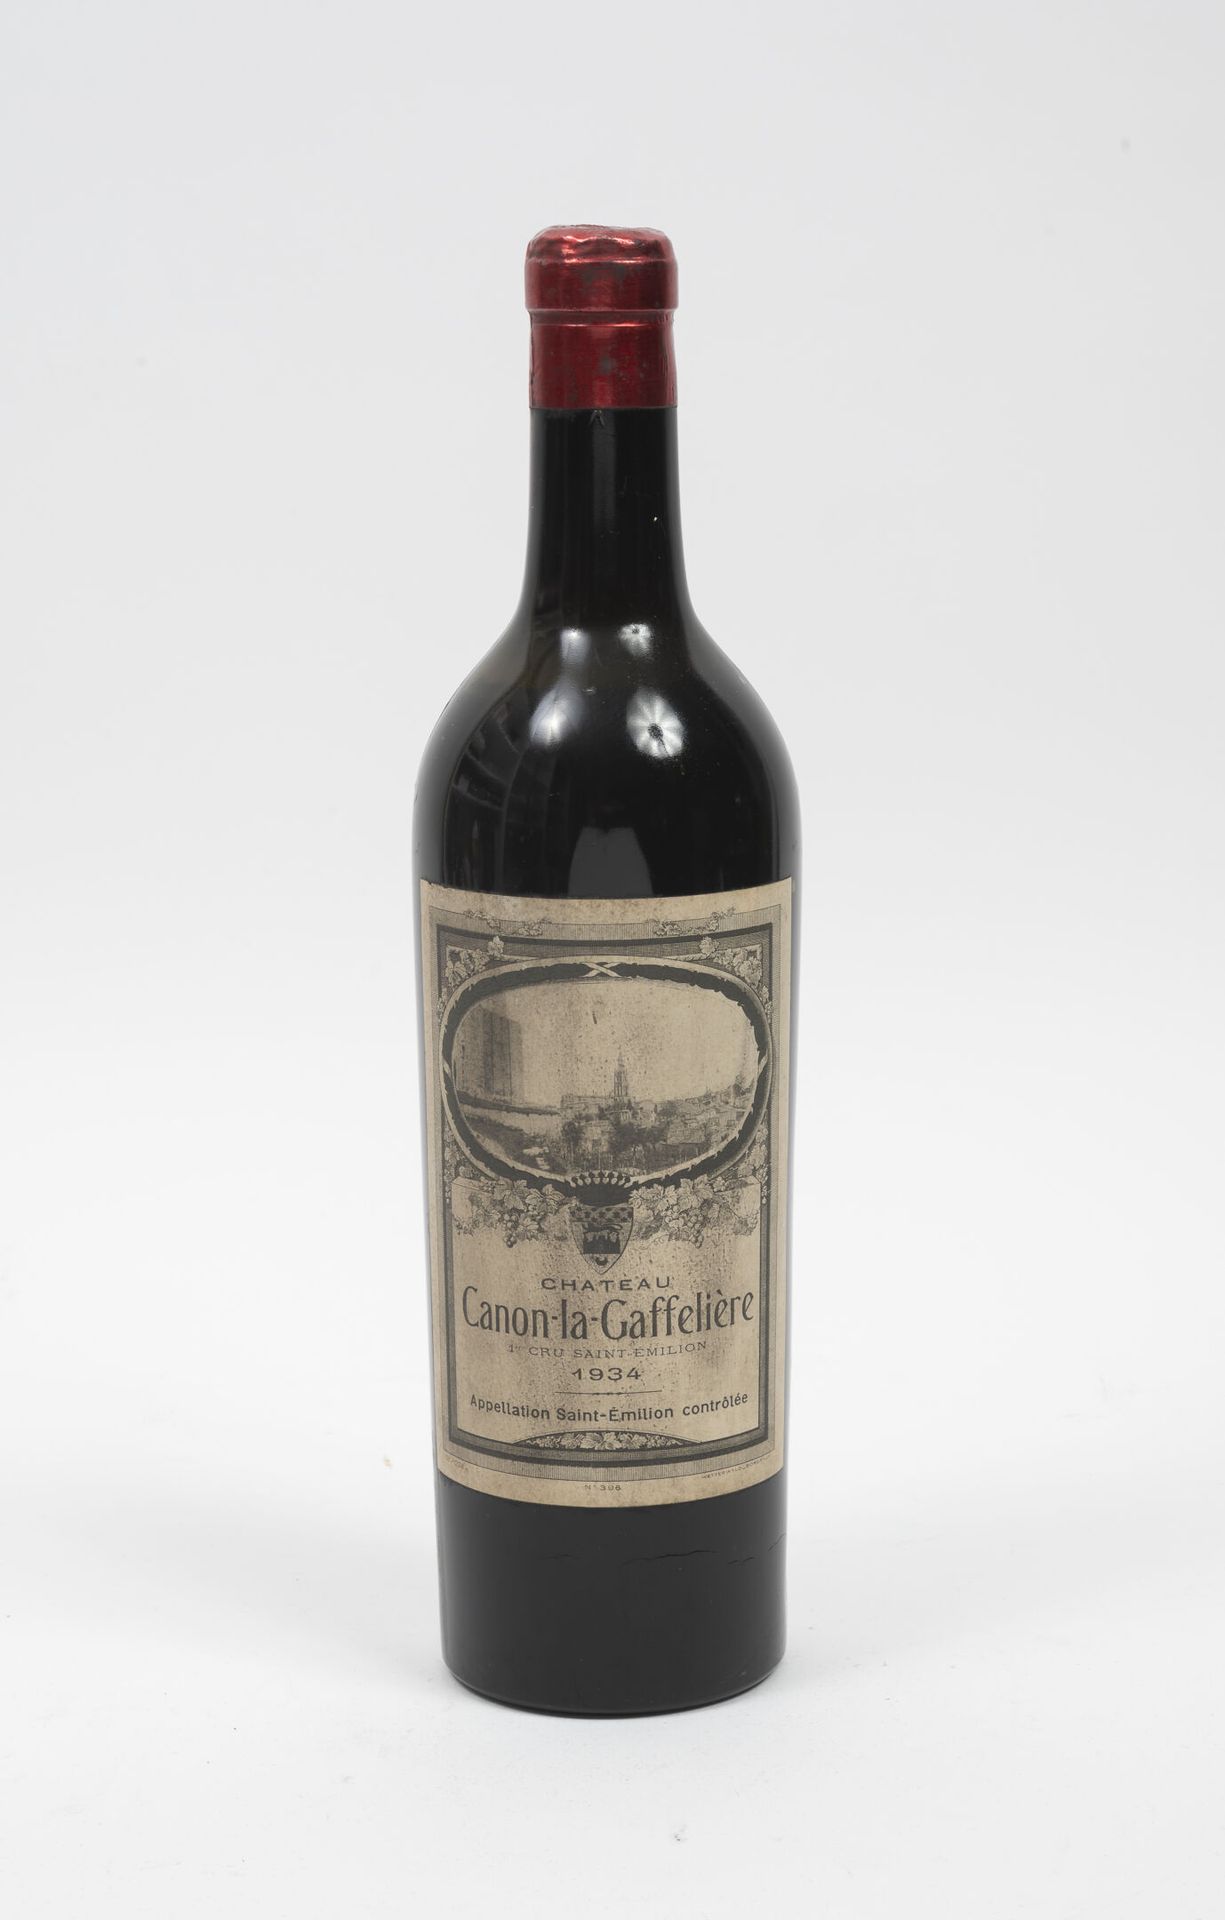 CHÂTEAU CANON-LA-GAFFELIERE 1 botella, 1934.

De la mitad del hombro a la parte &hellip;